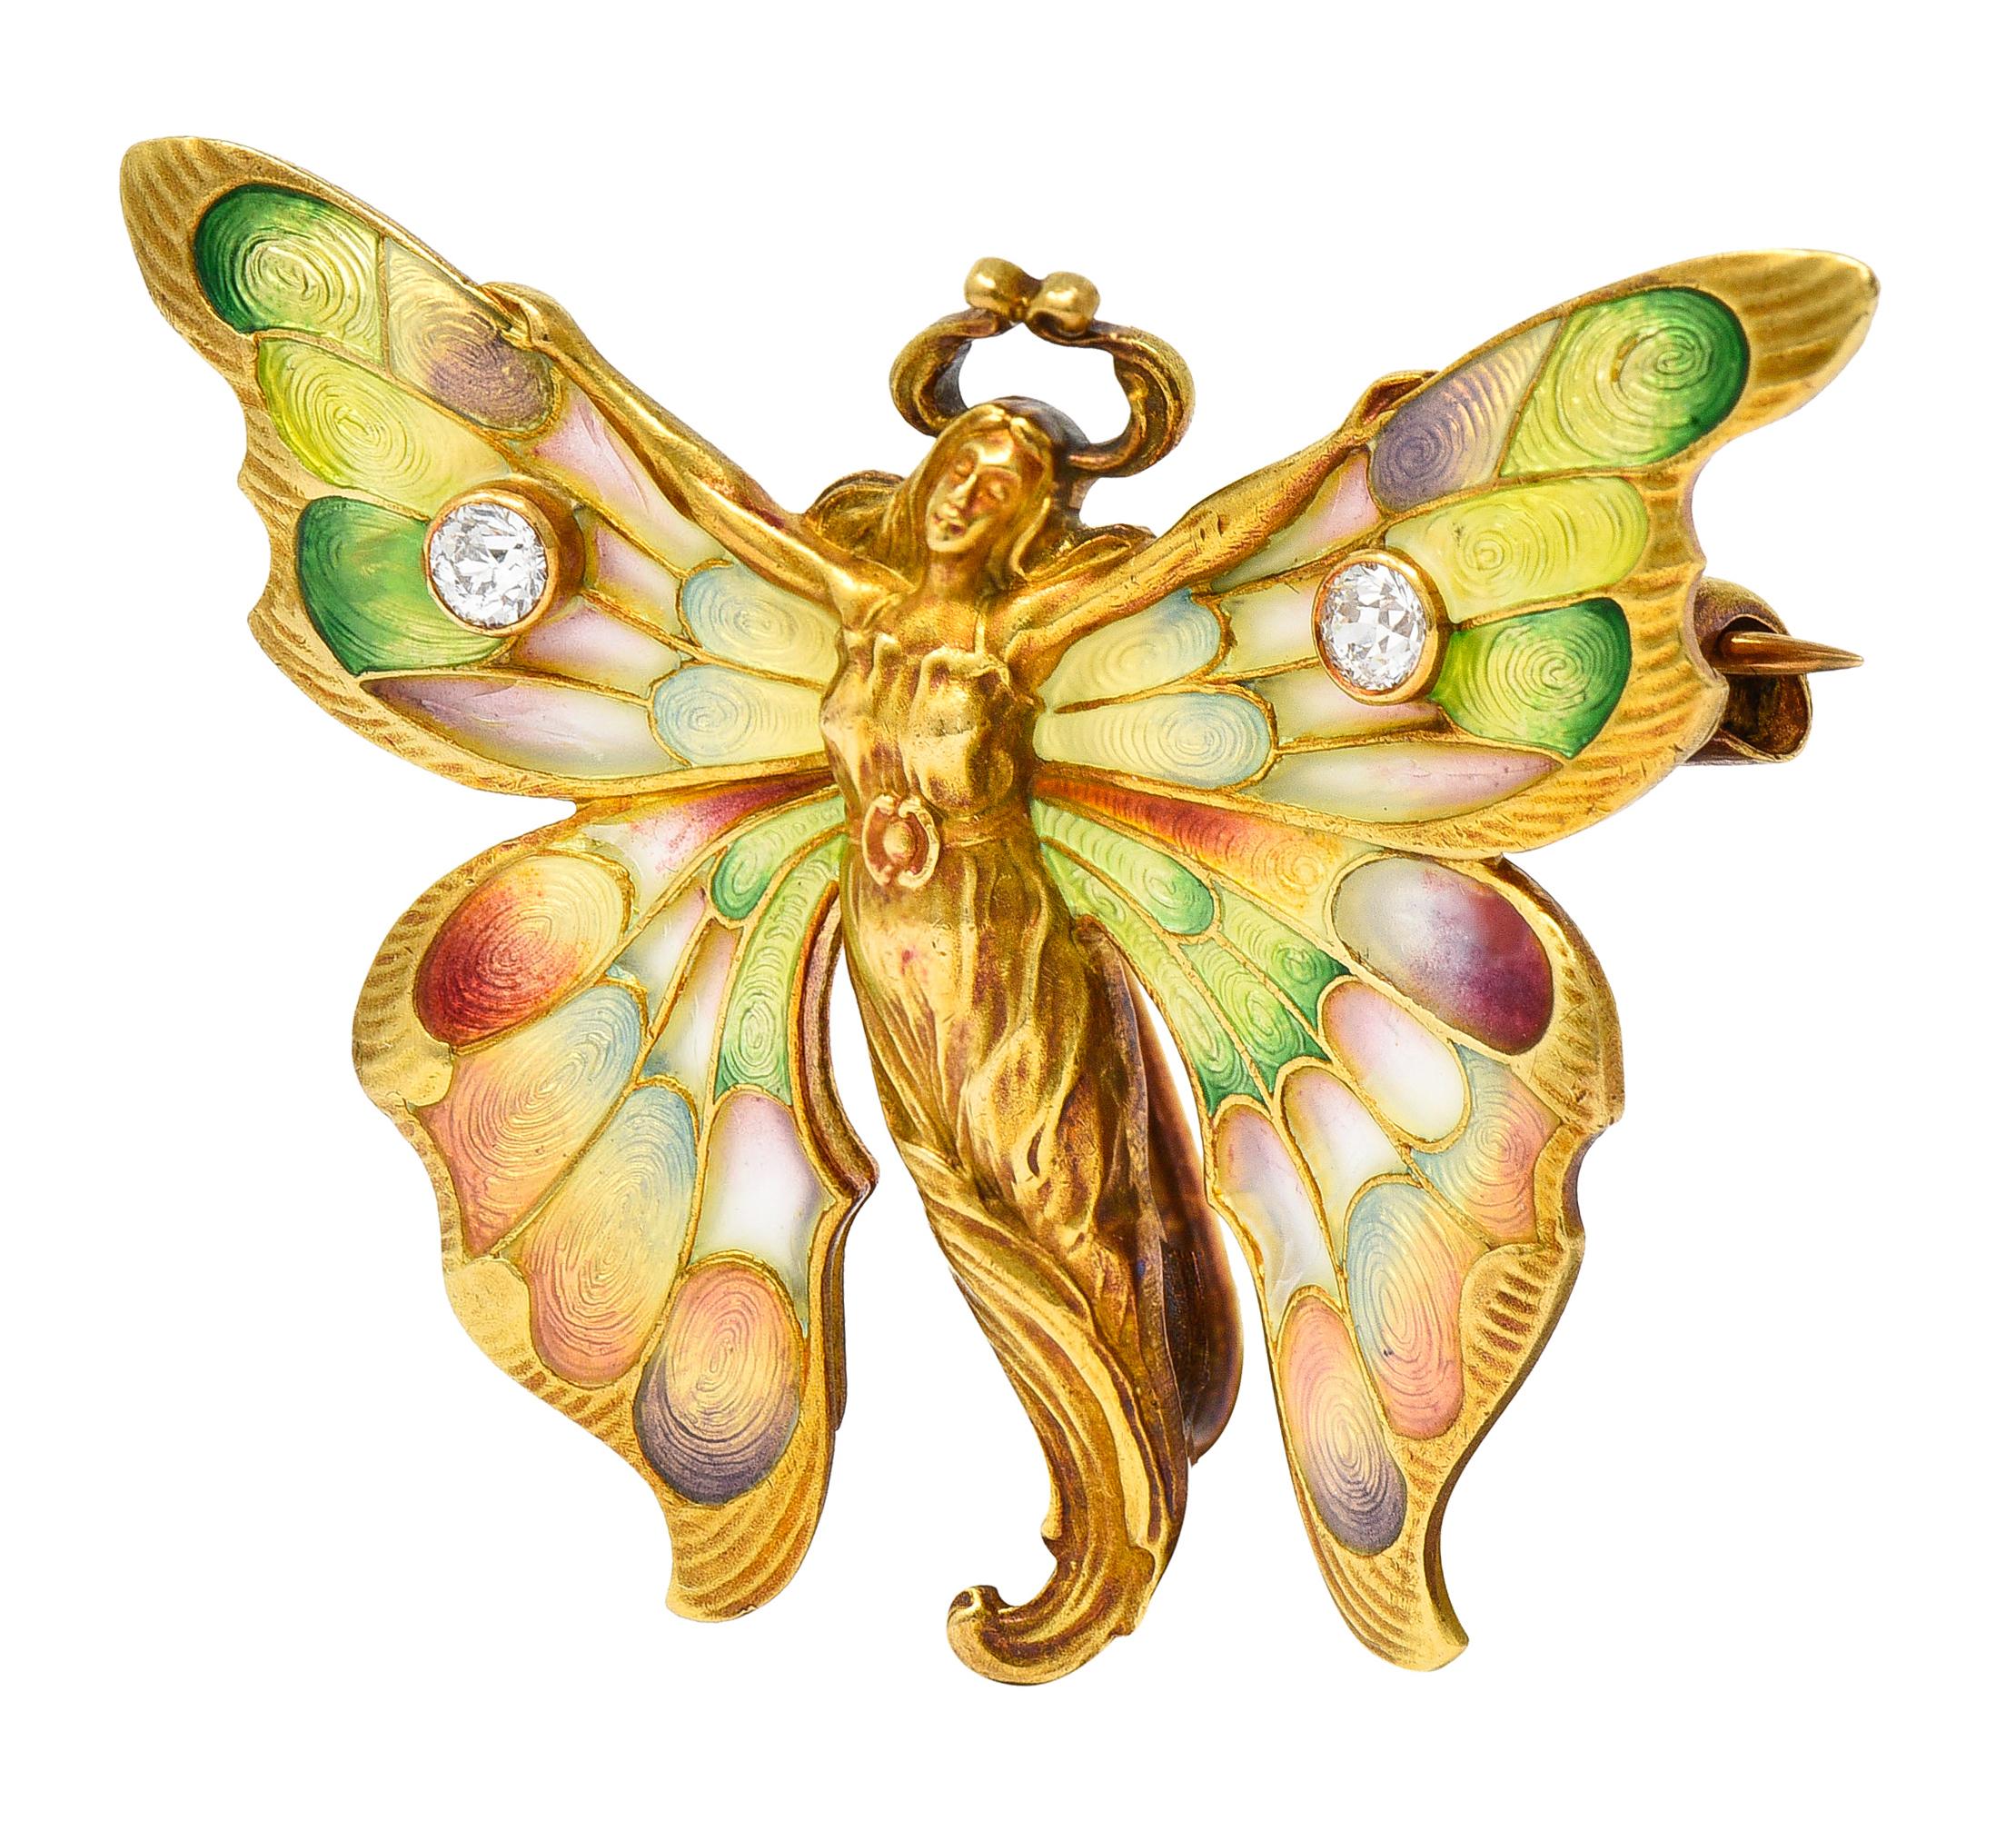 La broche représente une nymphe de fée ailée - sa silhouette est très bien rendue en or. Avec des ailes déployées en émail brillant translucide et irisé de type plique-a-jour et guilloché. Ne présente aucune perte de couleur verte, jaune, violette,